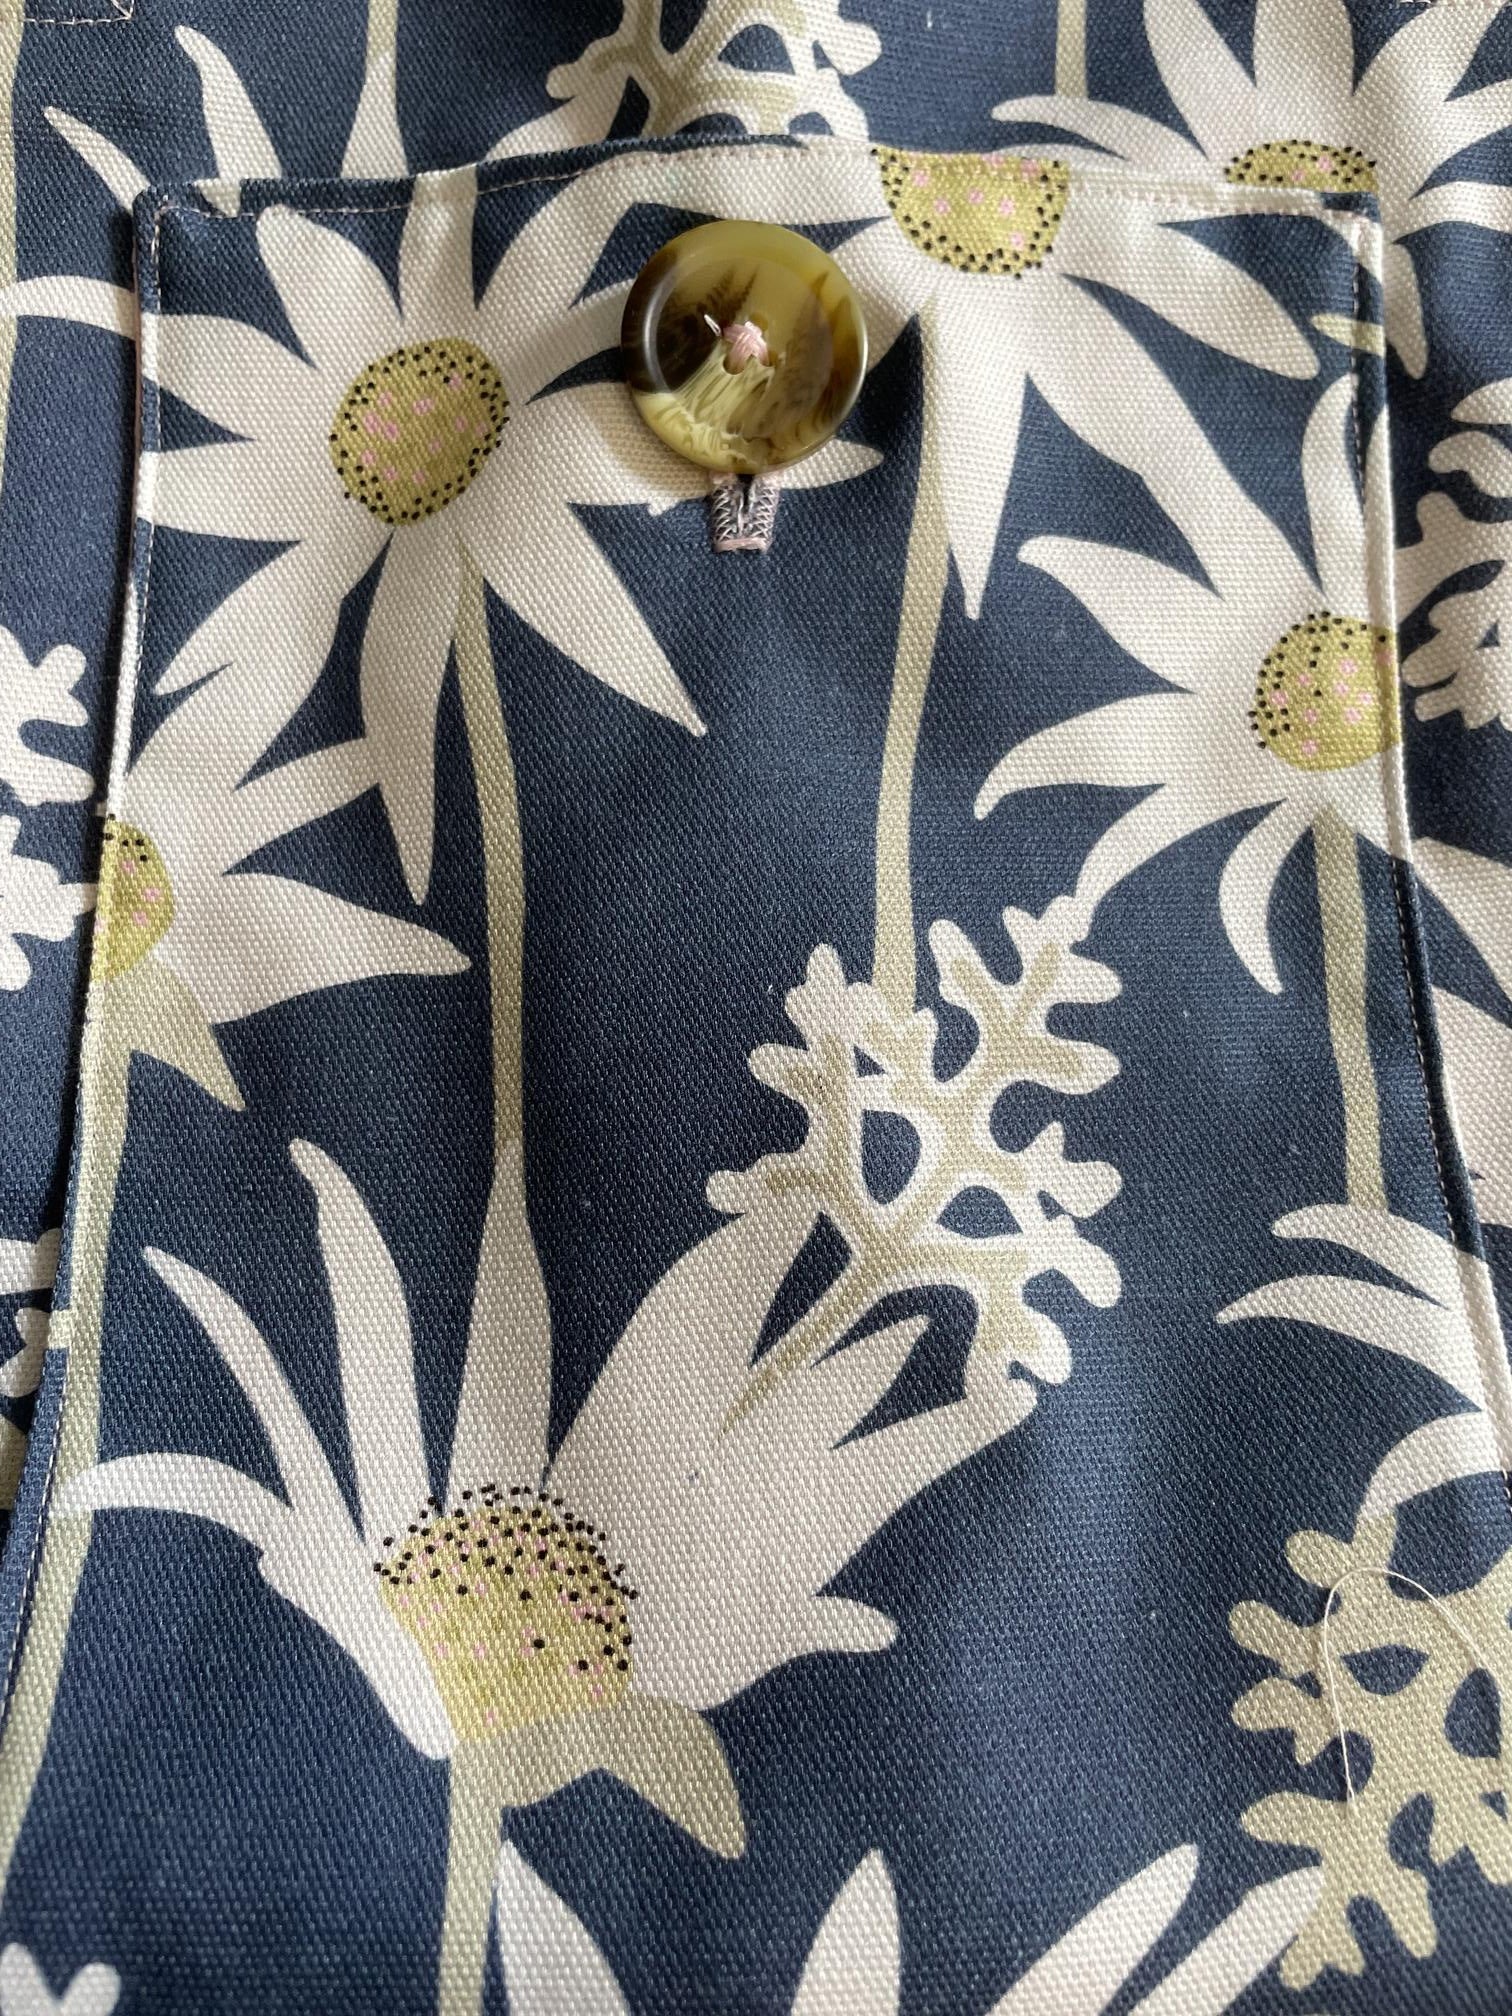 Harvest Apron Flannel Flower Design